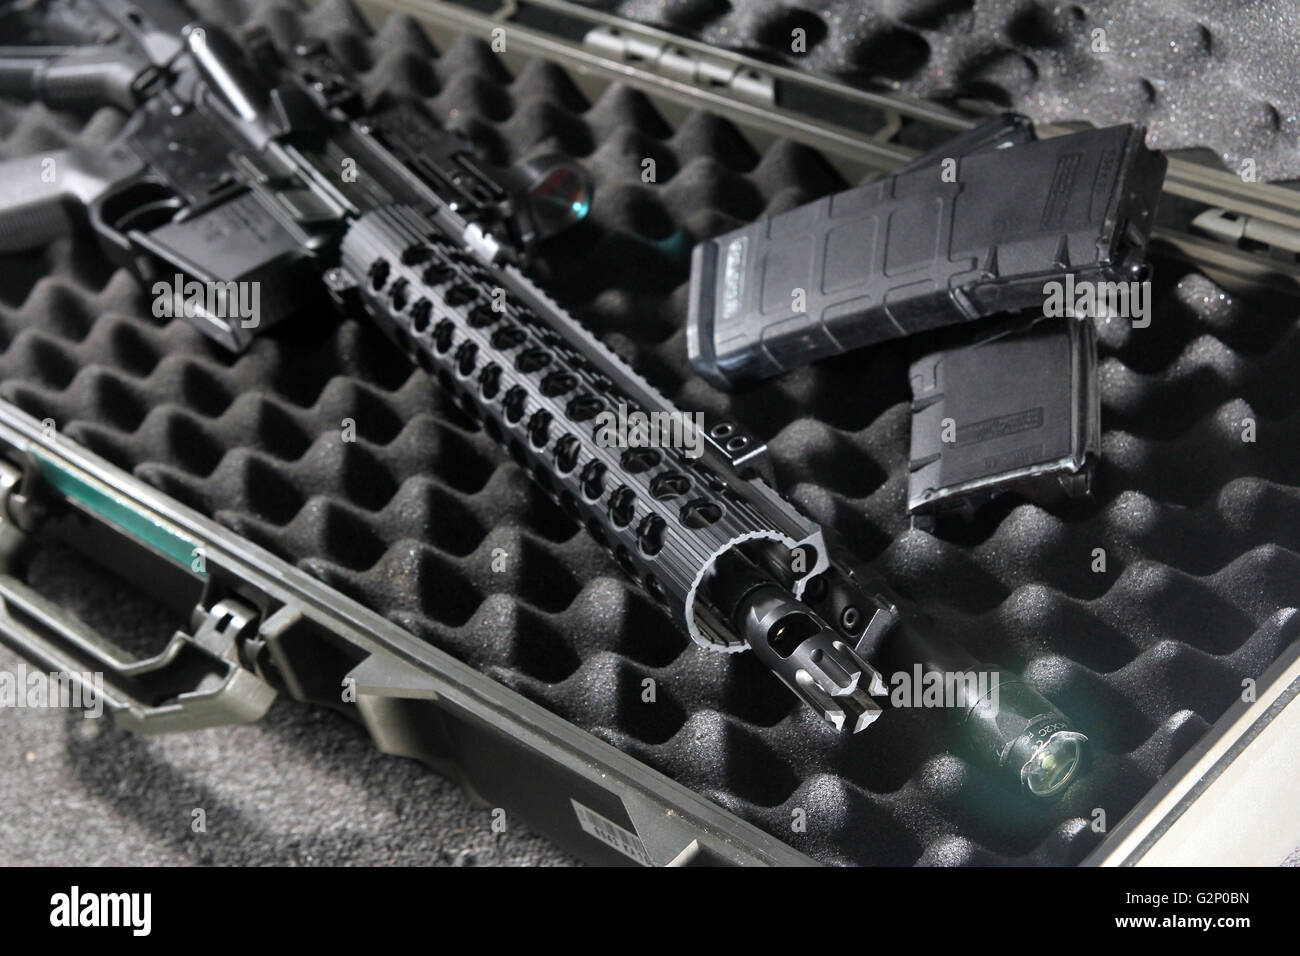 M4 carbine fusil cas tuer killer magazine lumière tactique prêt protéger crime attaque assassiner rift rifte usa précis Banque D'Images